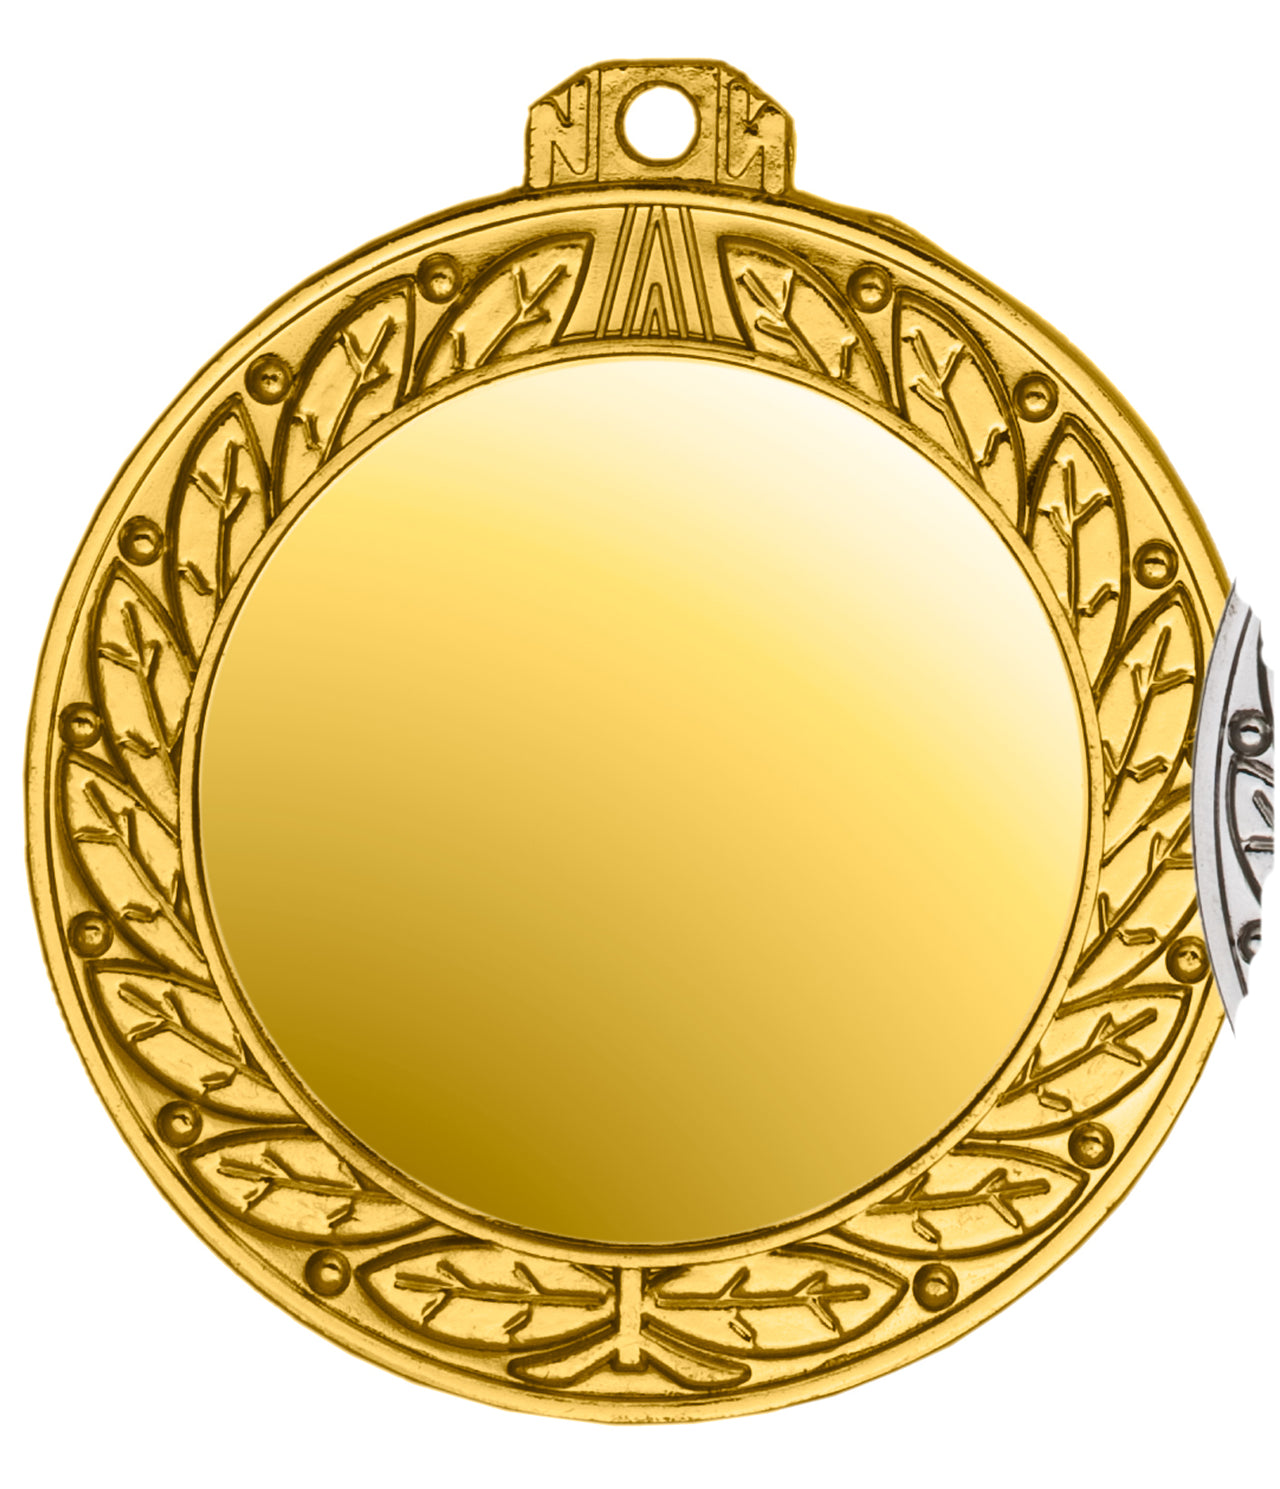 Der Medaillen Offenbach 70 mm PK79174g-E50 ist ein goldener runder Spiegel mit exklusivem Design, einem kunstvollen Blättermuster um den Rand und einer kleinen Schlaufe zum Aufhängen an der Oberseite.